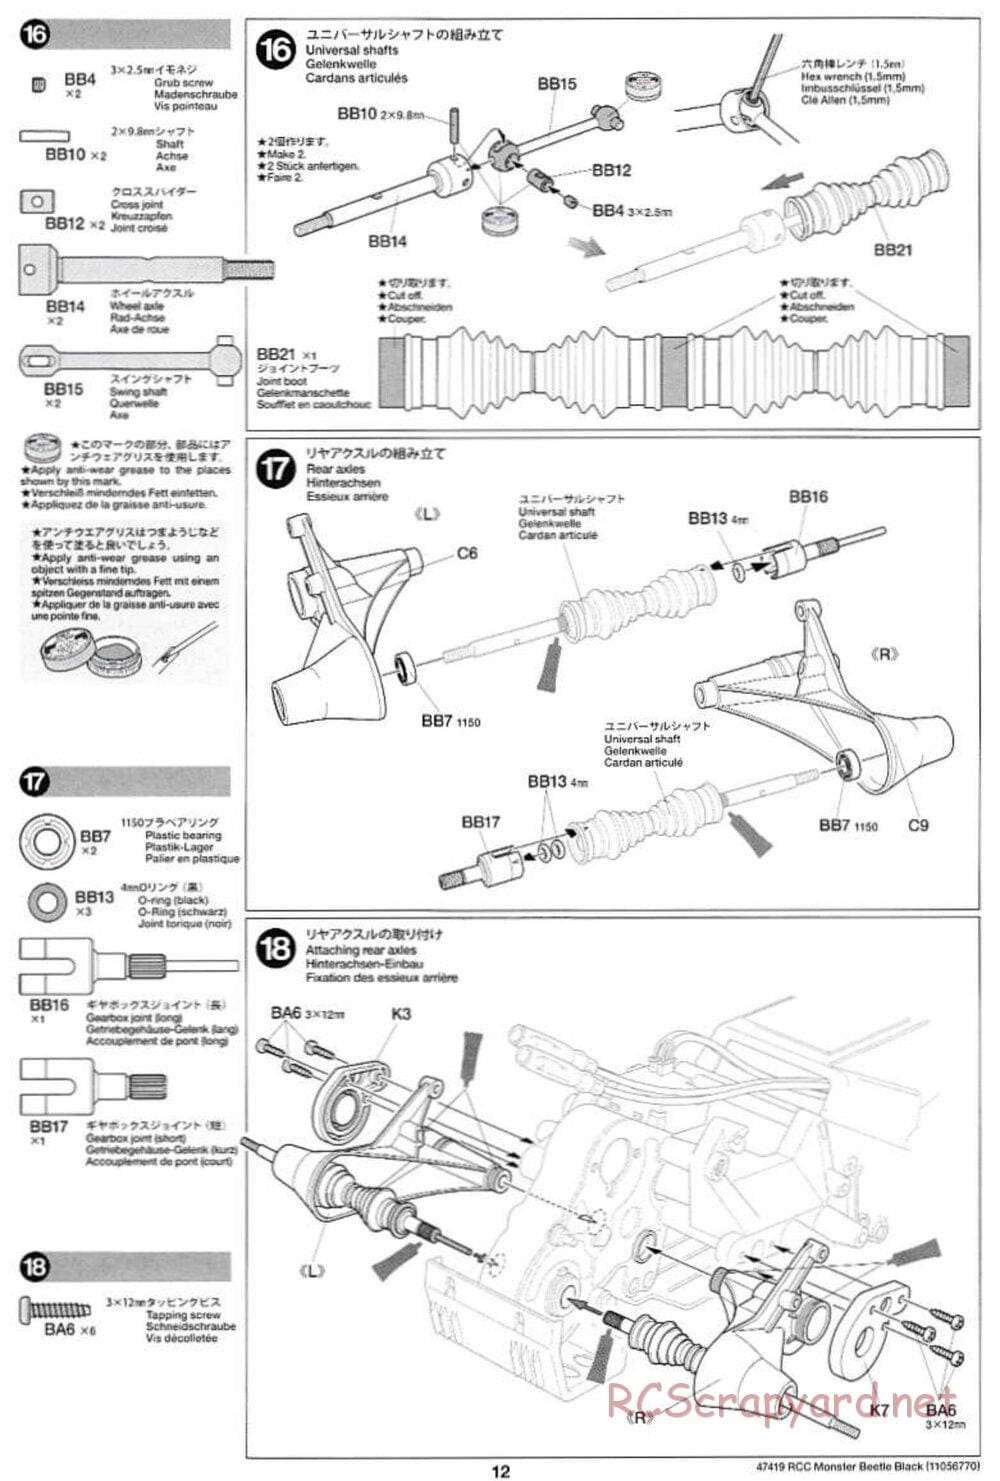 Tamiya - Monster Beetle Black Edition - ORV Chassis - Manual - Page 12